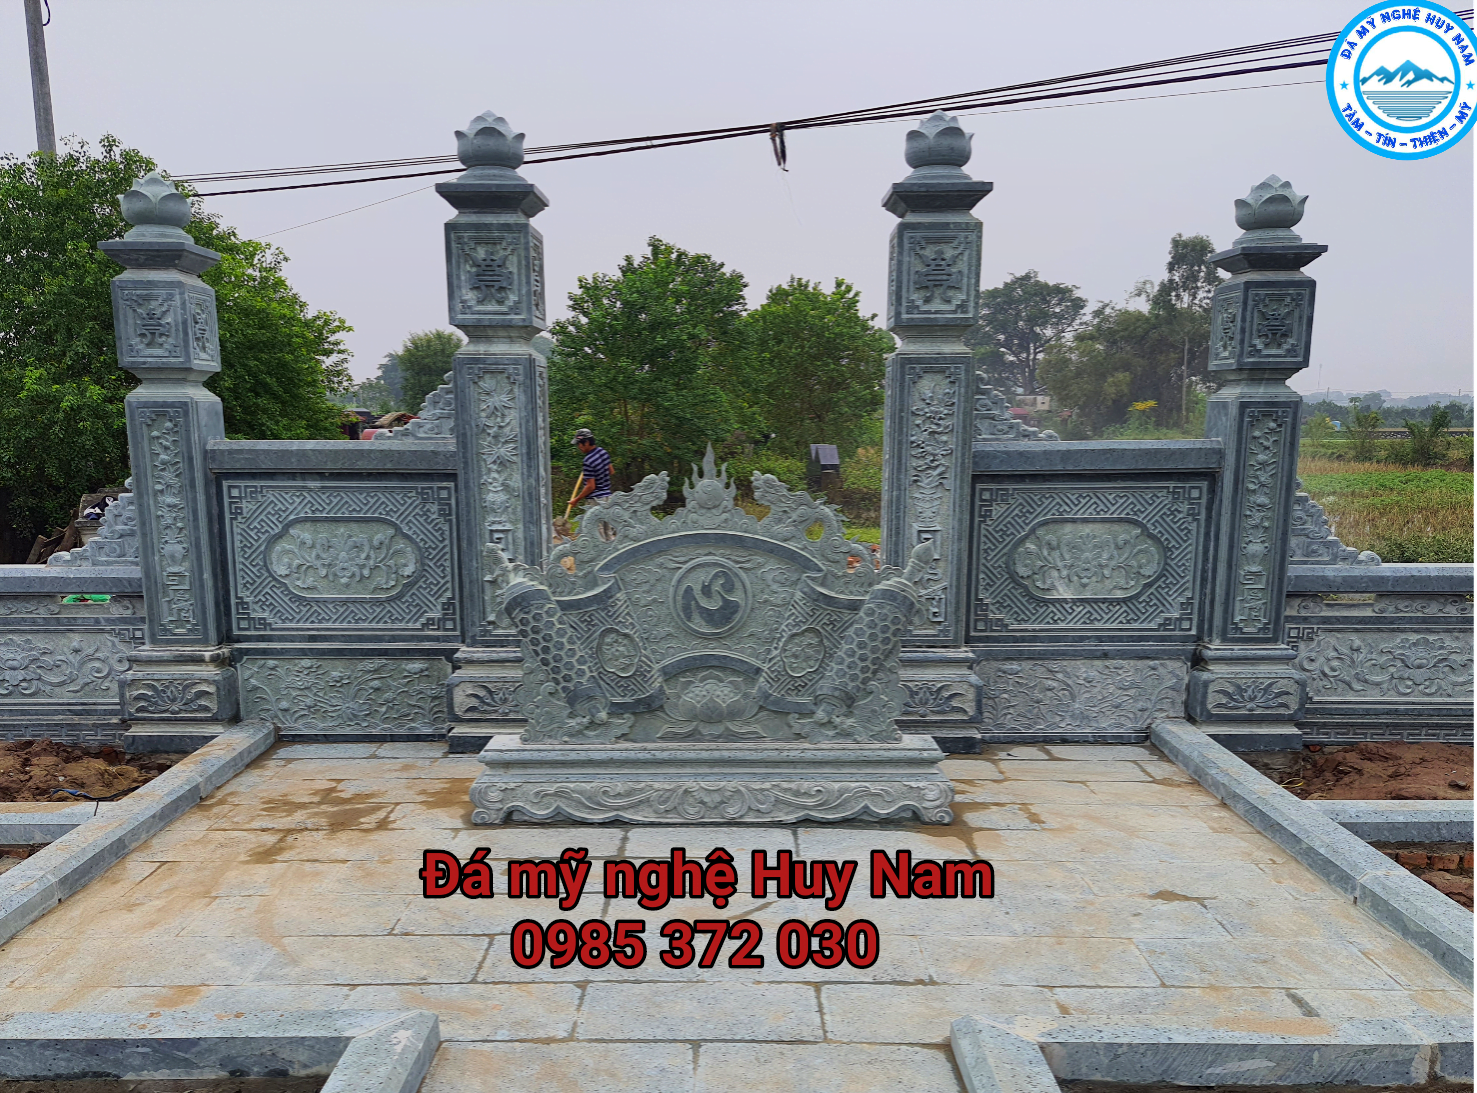 Hình ảnh chụp cổng tứ trụ lăng mộ, cuốn thư đá khu lăng mộ đá xanh rêu đẹp tại Thường Tín, Hà Nội từ phía trong ra